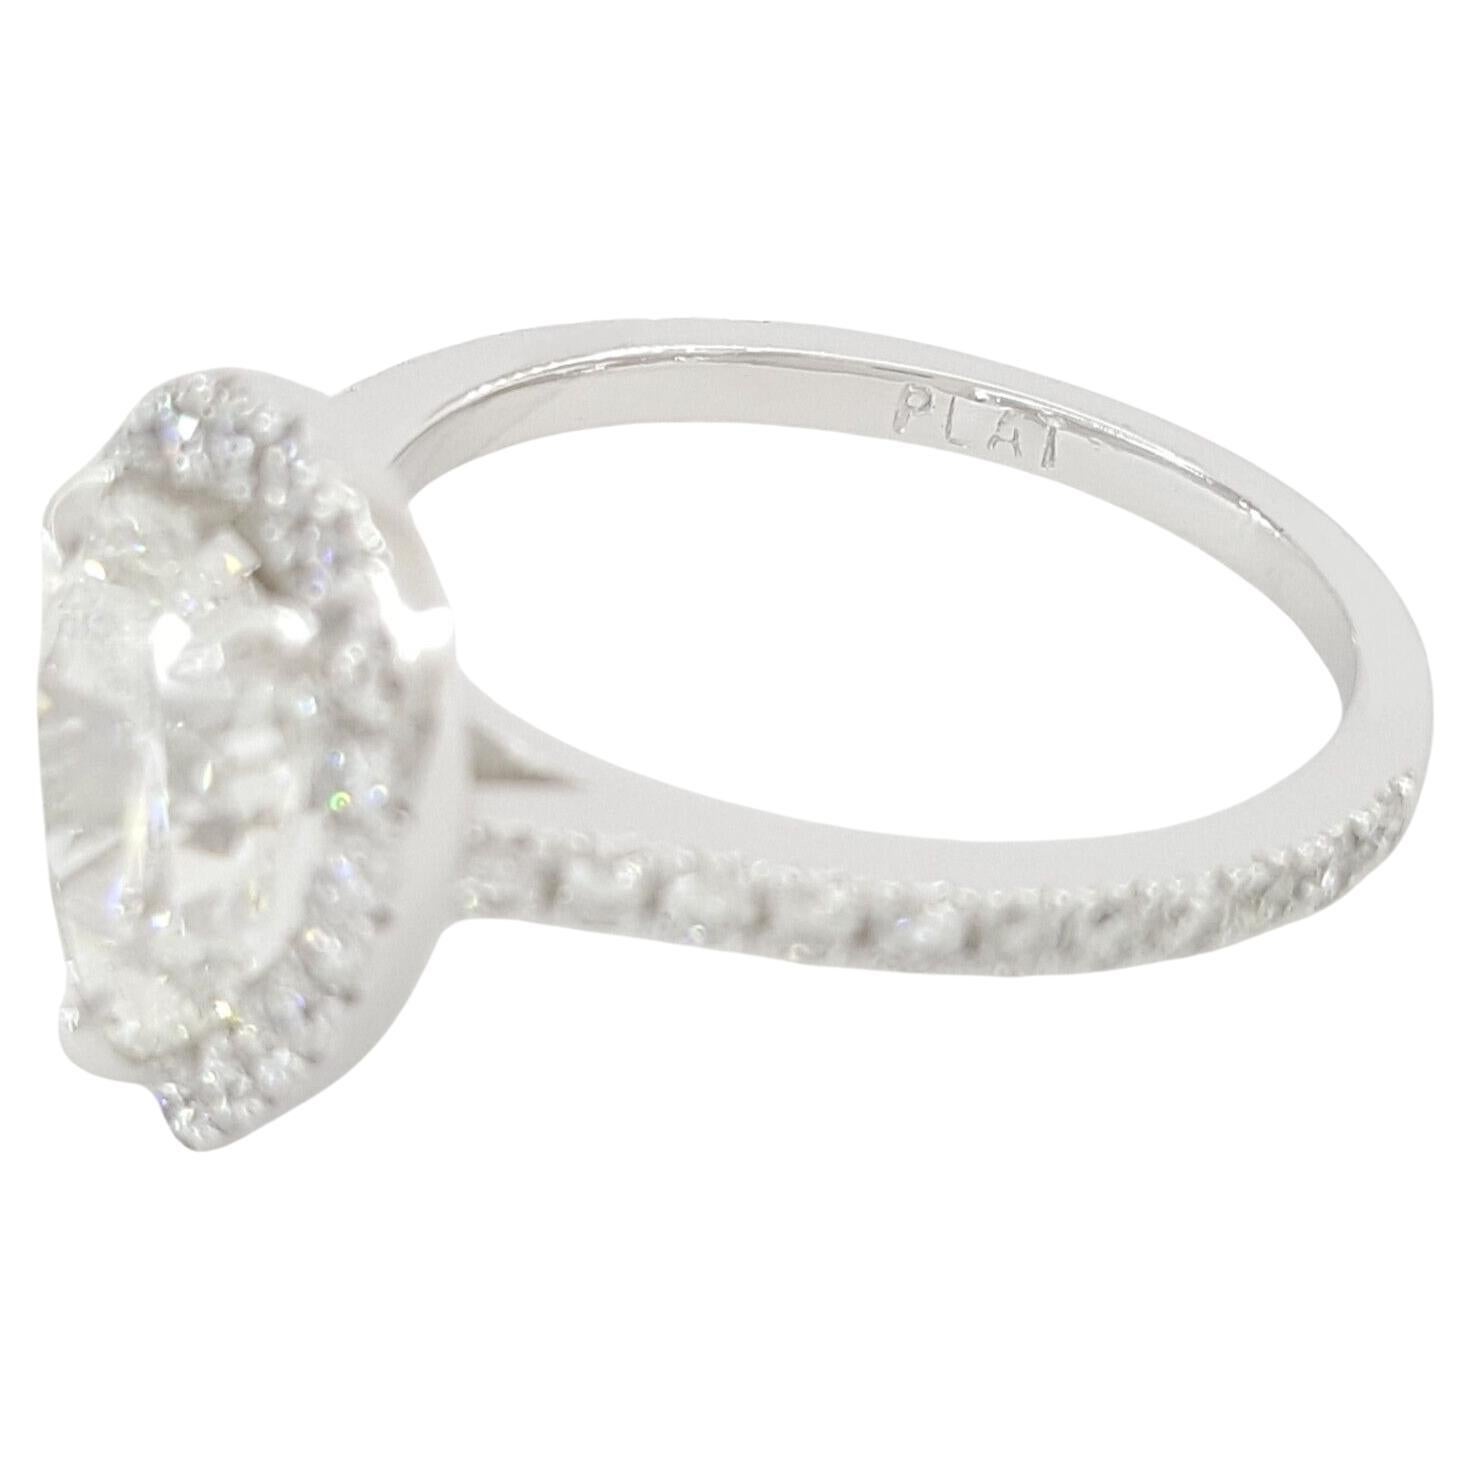 Wir präsentieren einen exquisiten Diamant-Halo-Verlobungsring mit Birnen-Brillantschliff in Platin mit einem Gesamtgewicht von 2,32 Karat. Der Ring mit einem Gewicht von 5 Gramm und der Größe 6 besticht durch seinen Mittelstein - einen natürlichen